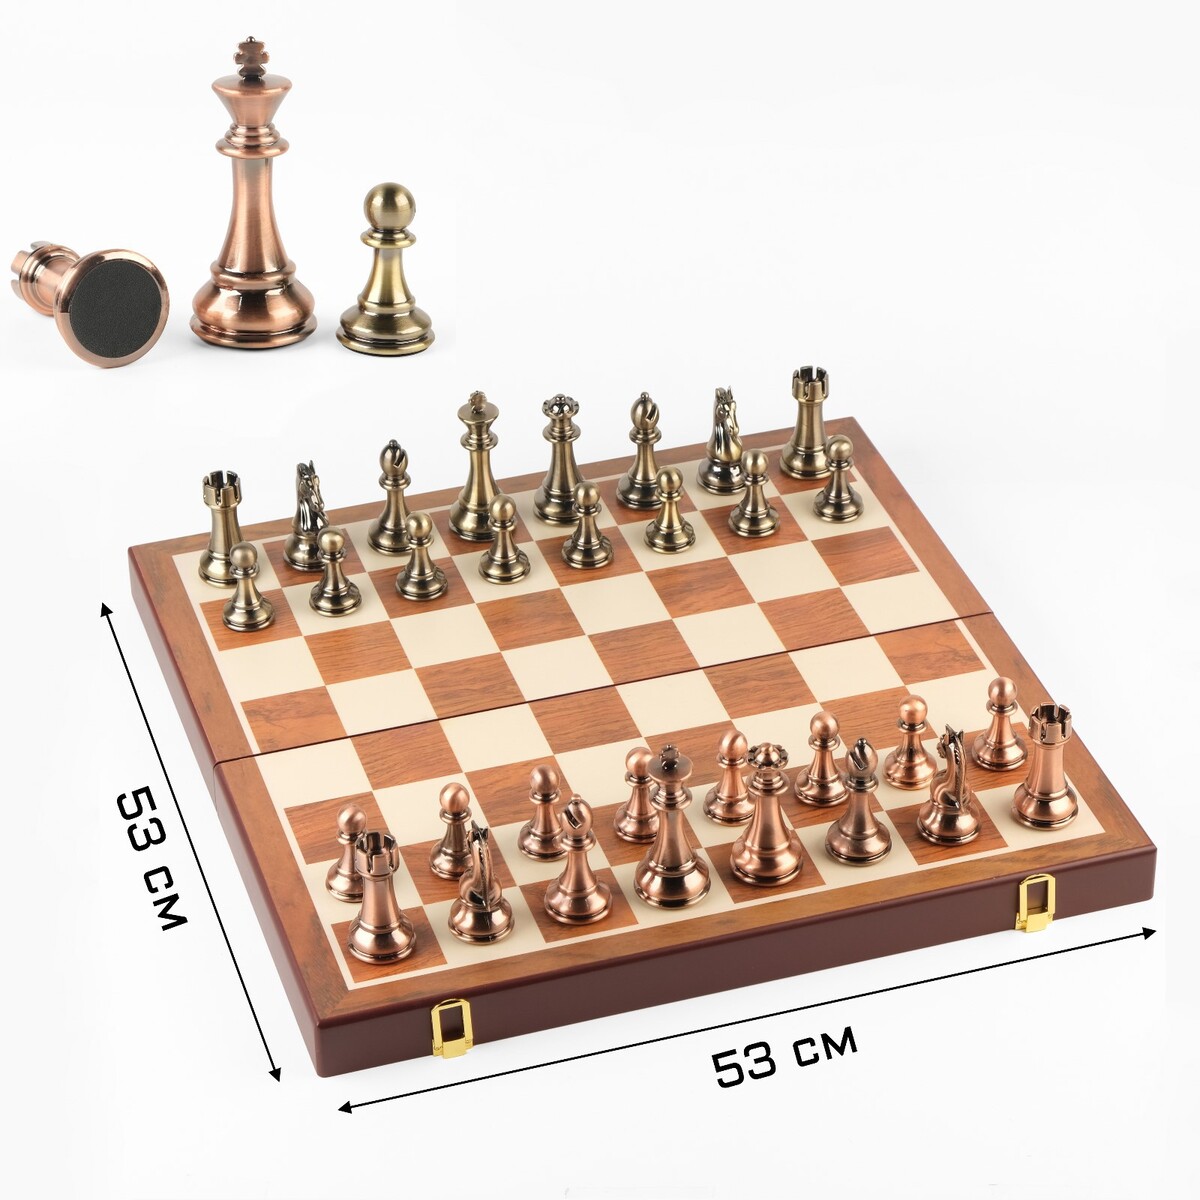 Шахматы сувенирные, деревянная доска 53 х 53 см, металлические фигуры